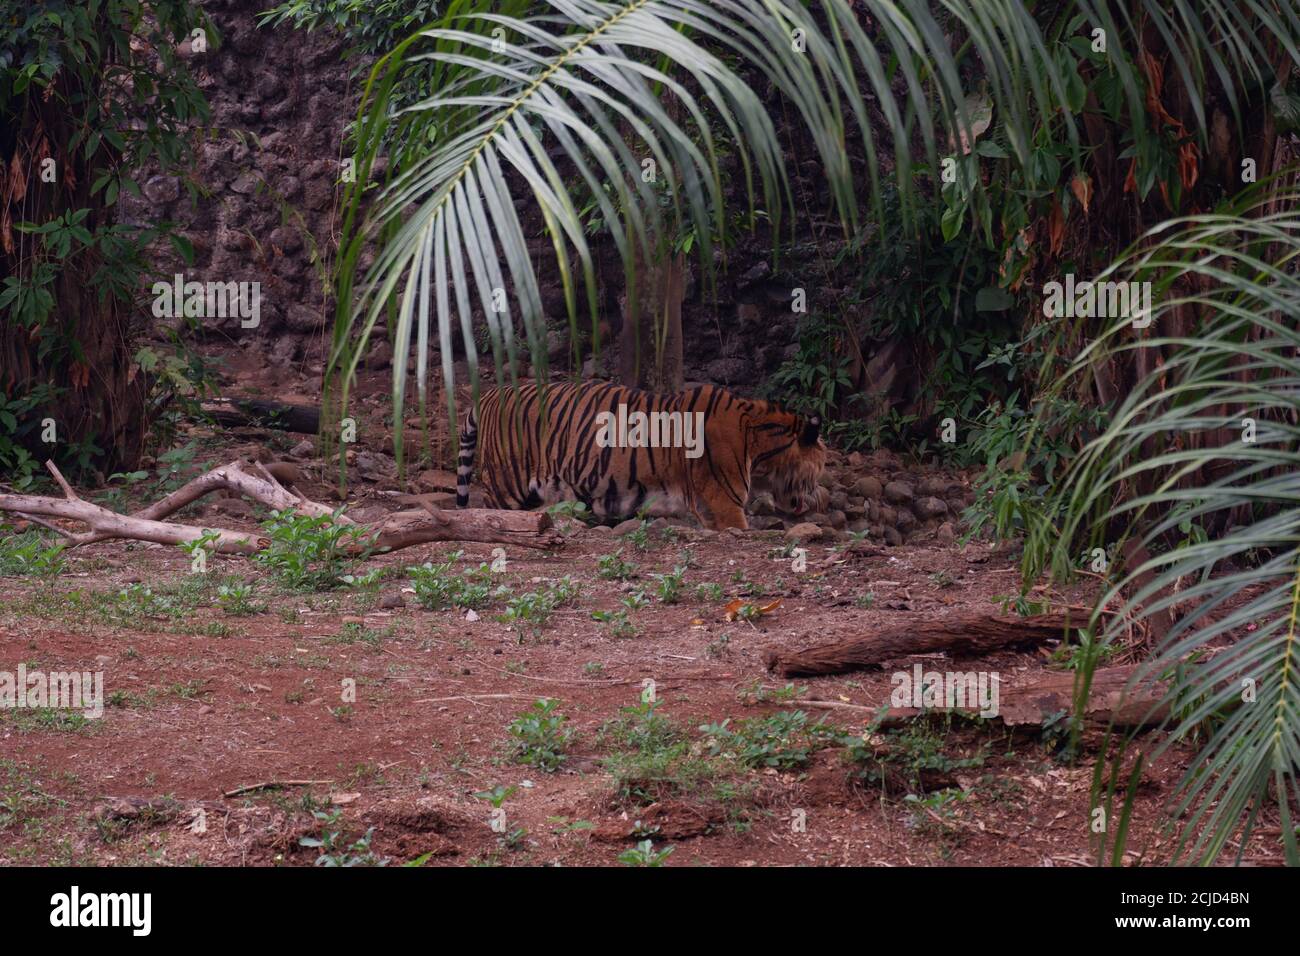 Le tigre de Sumatra est une population de Panthera tigris sondaica dans l'île indonésienne de Sumatra. Cette population a été inscrite comme étant critique Banque D'Images